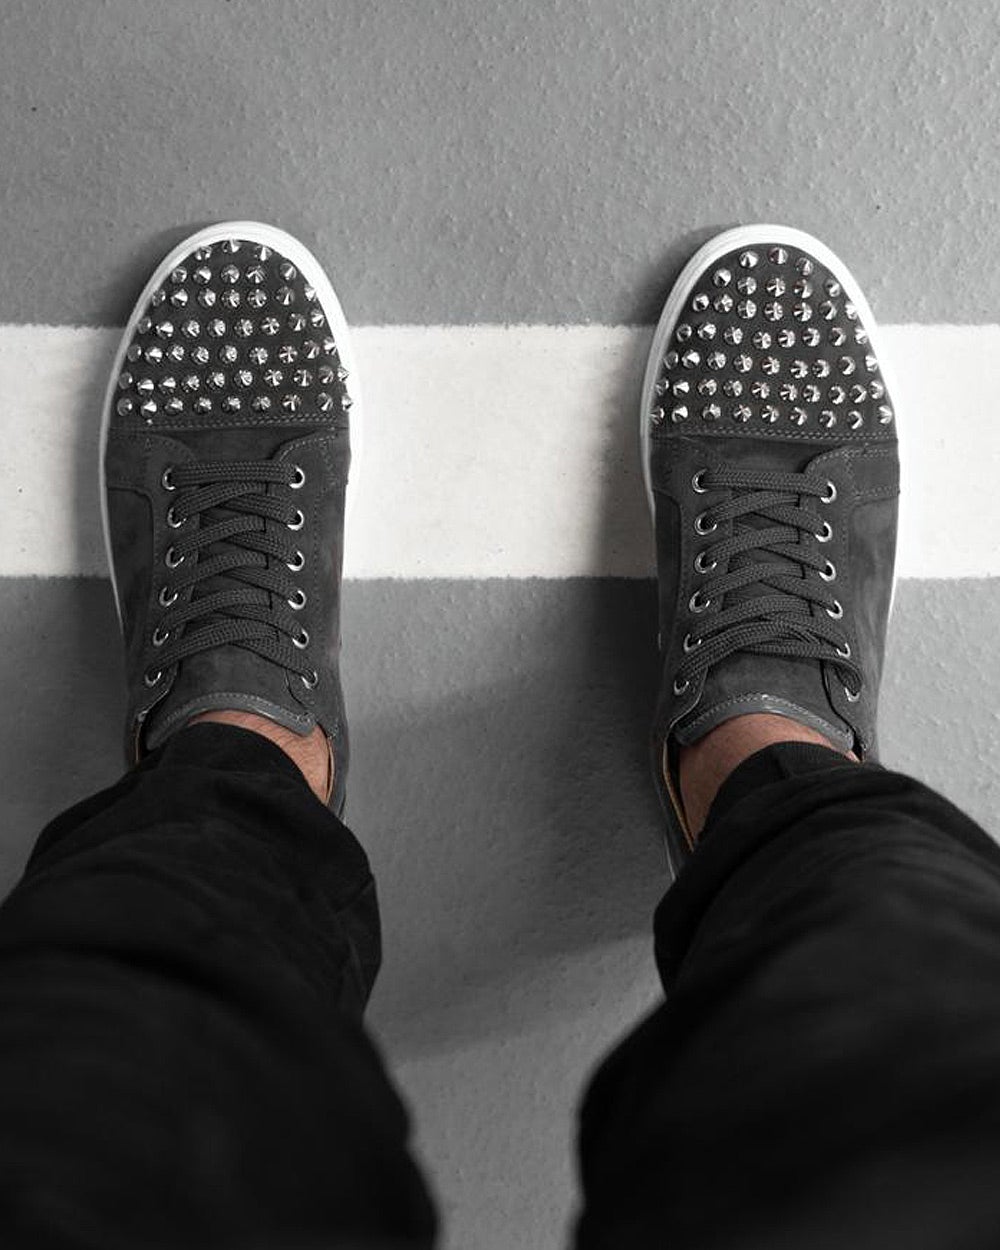 BB Salazar men's low-top gray suede-look low-top sneakers with trendy studs